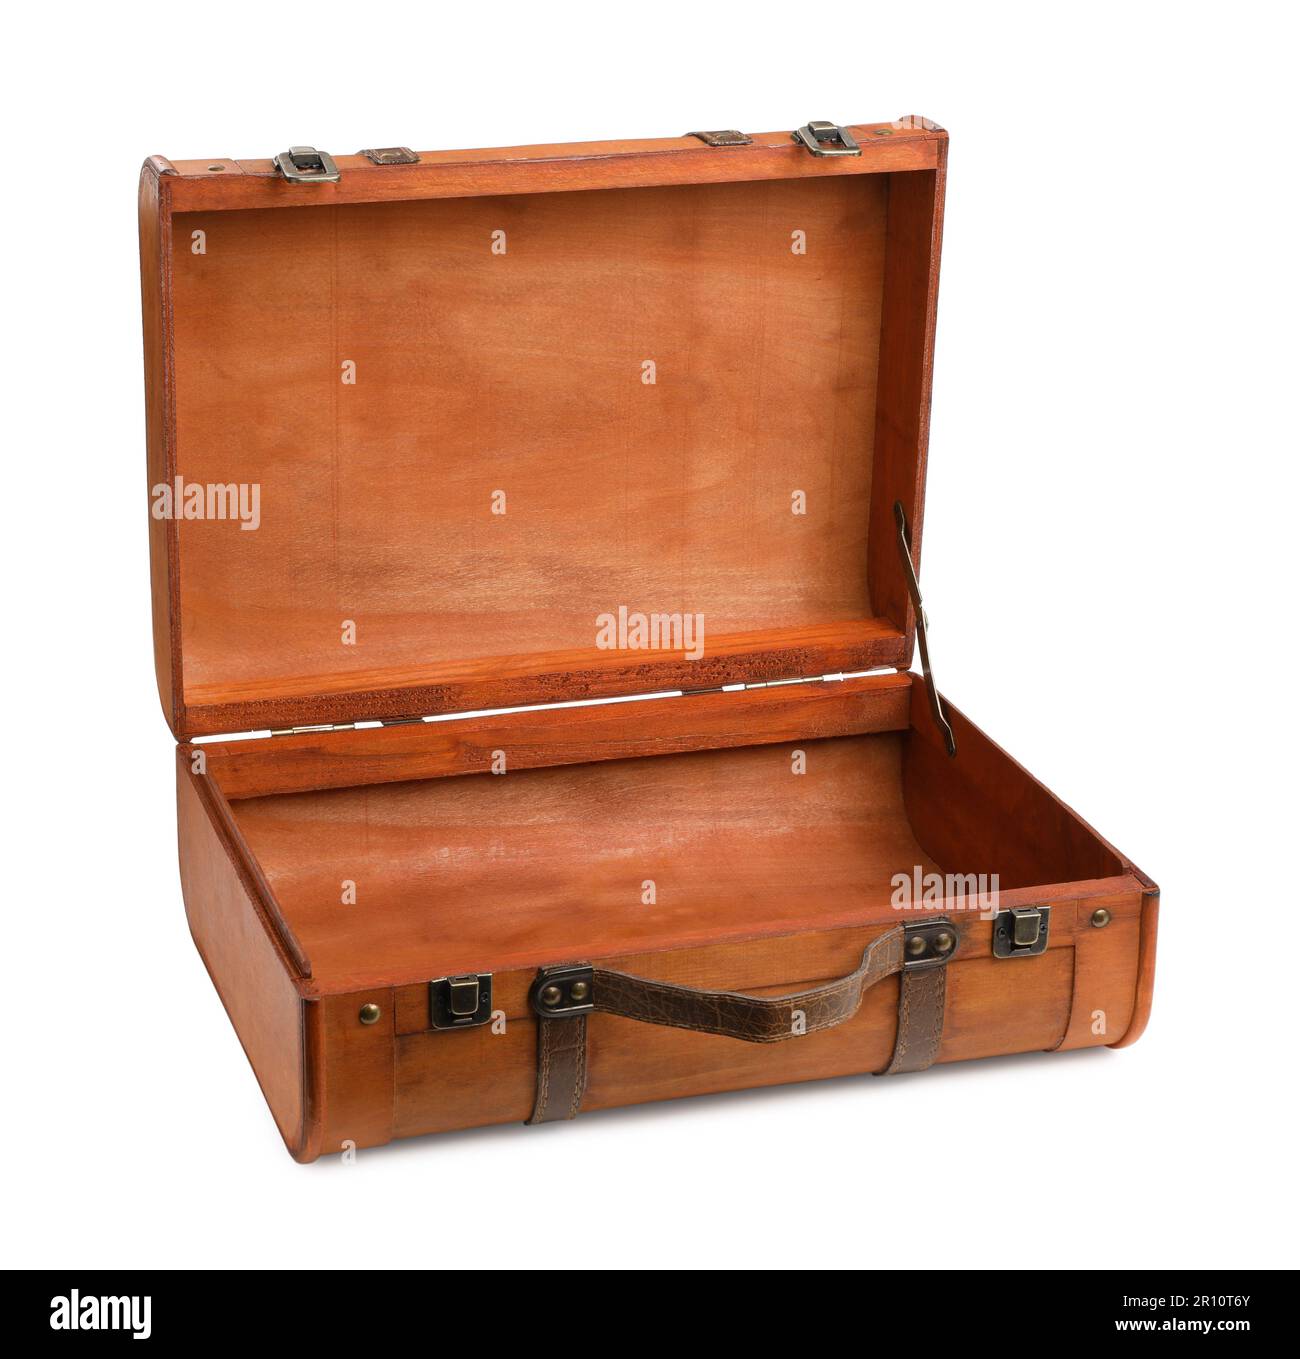 Opened brown stylish suitcase on white background Stock Photo